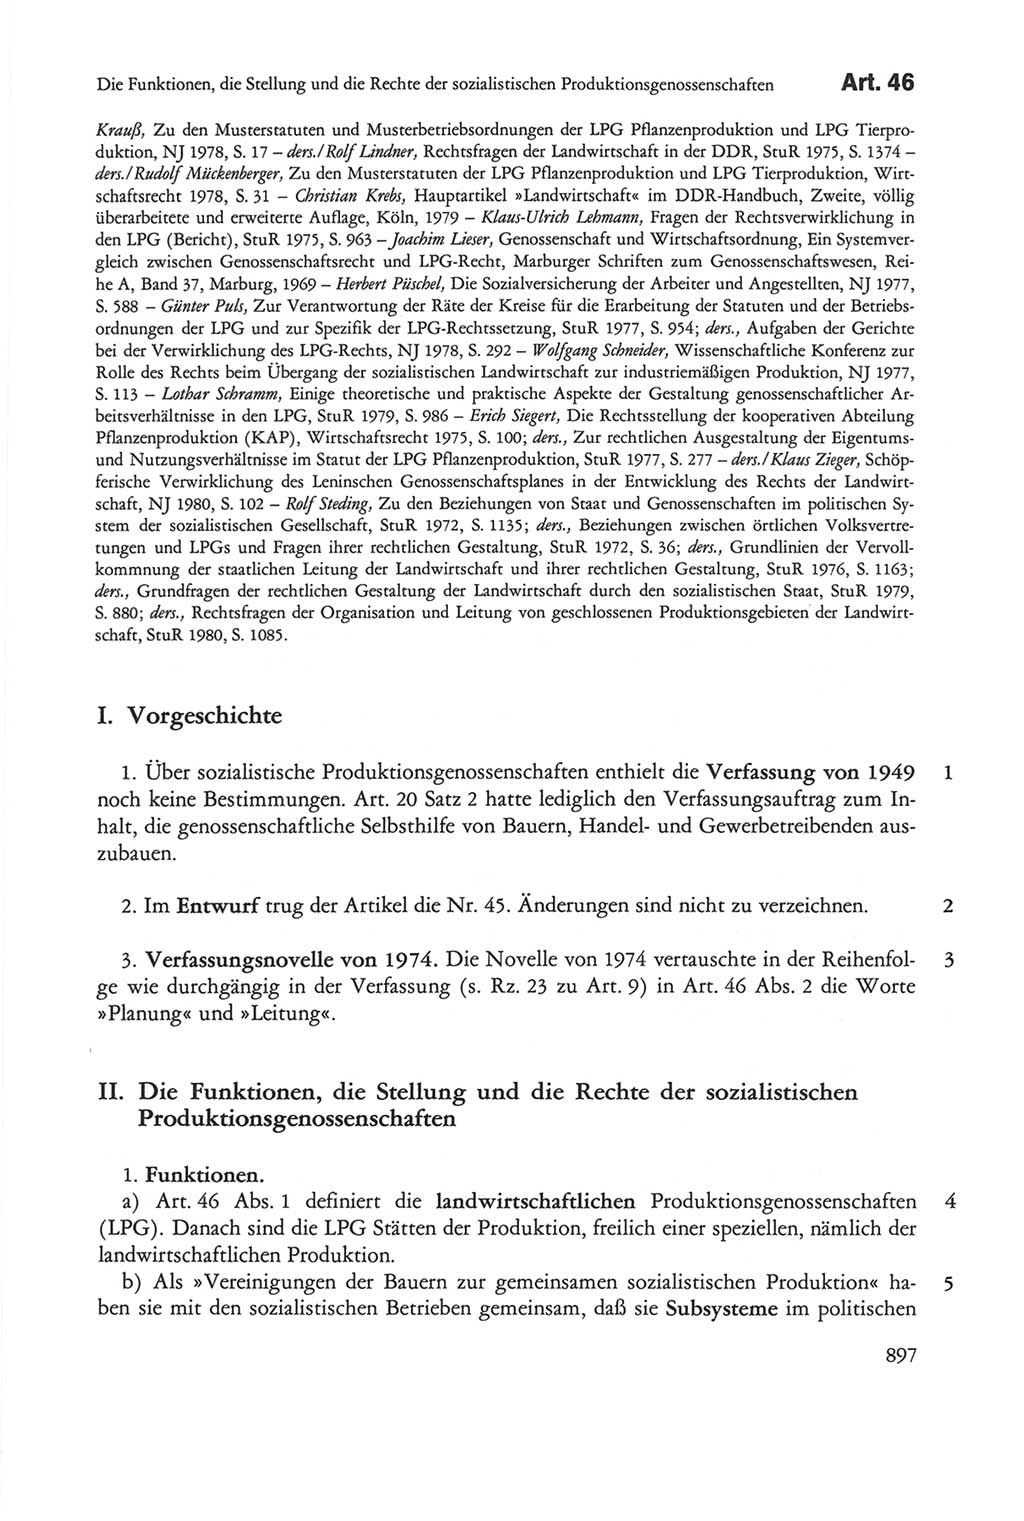 Die sozialistische Verfassung der Deutschen Demokratischen Republik (DDR), Kommentar mit einem Nachtrag 1997, Seite 897 (Soz. Verf. DDR Komm. Nachtr. 1997, S. 897)